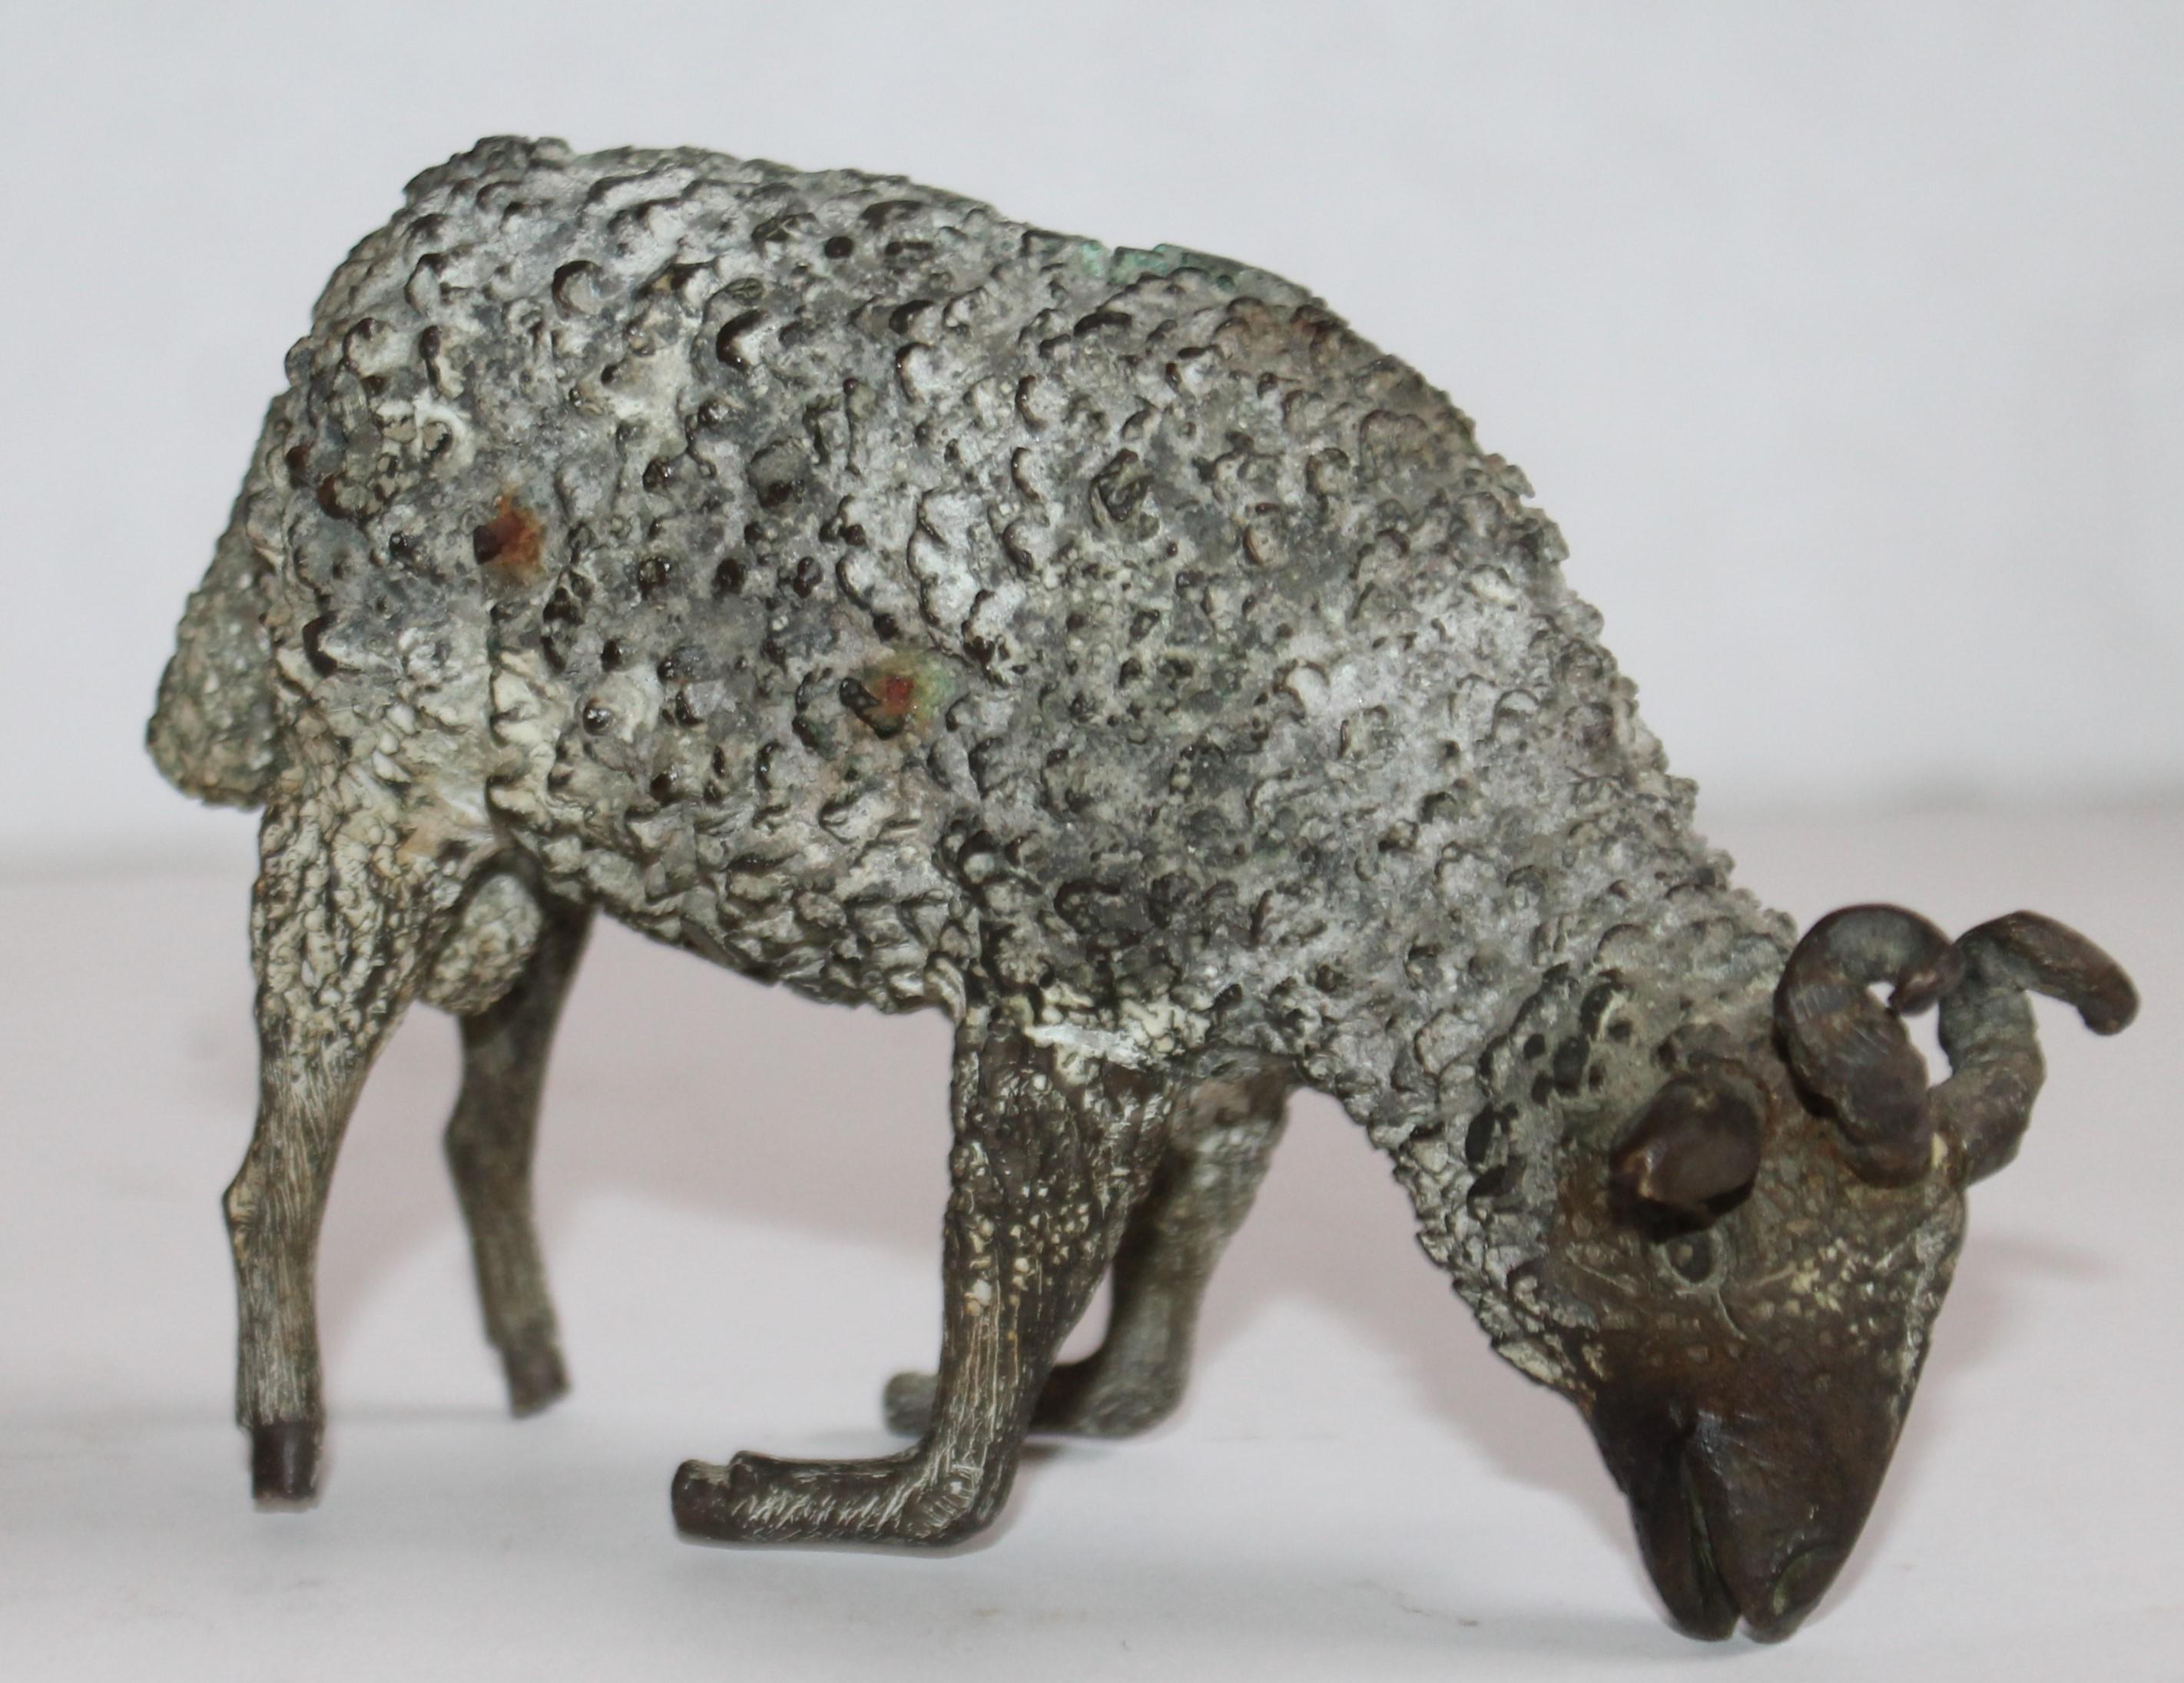 handgefertigte Bronzeskulptur eines Schafes aus dem 19. Jahrhundert. Keine Signatur oder Herstellermarke.